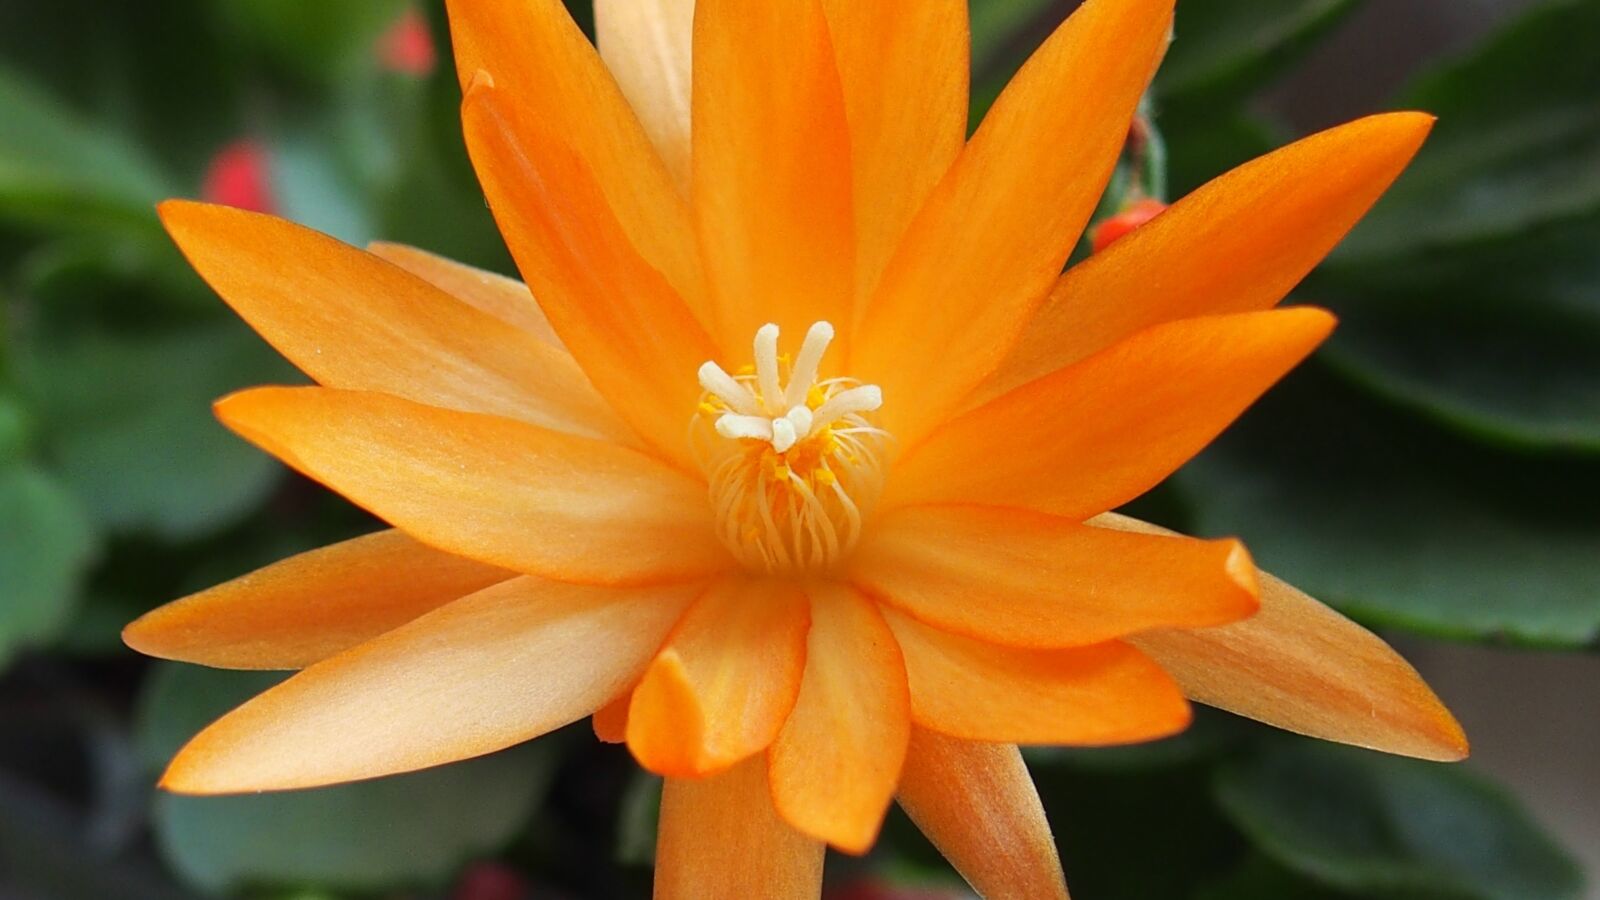 Olympus STYLUS1 sample photo. Flower, orange, cactus photography